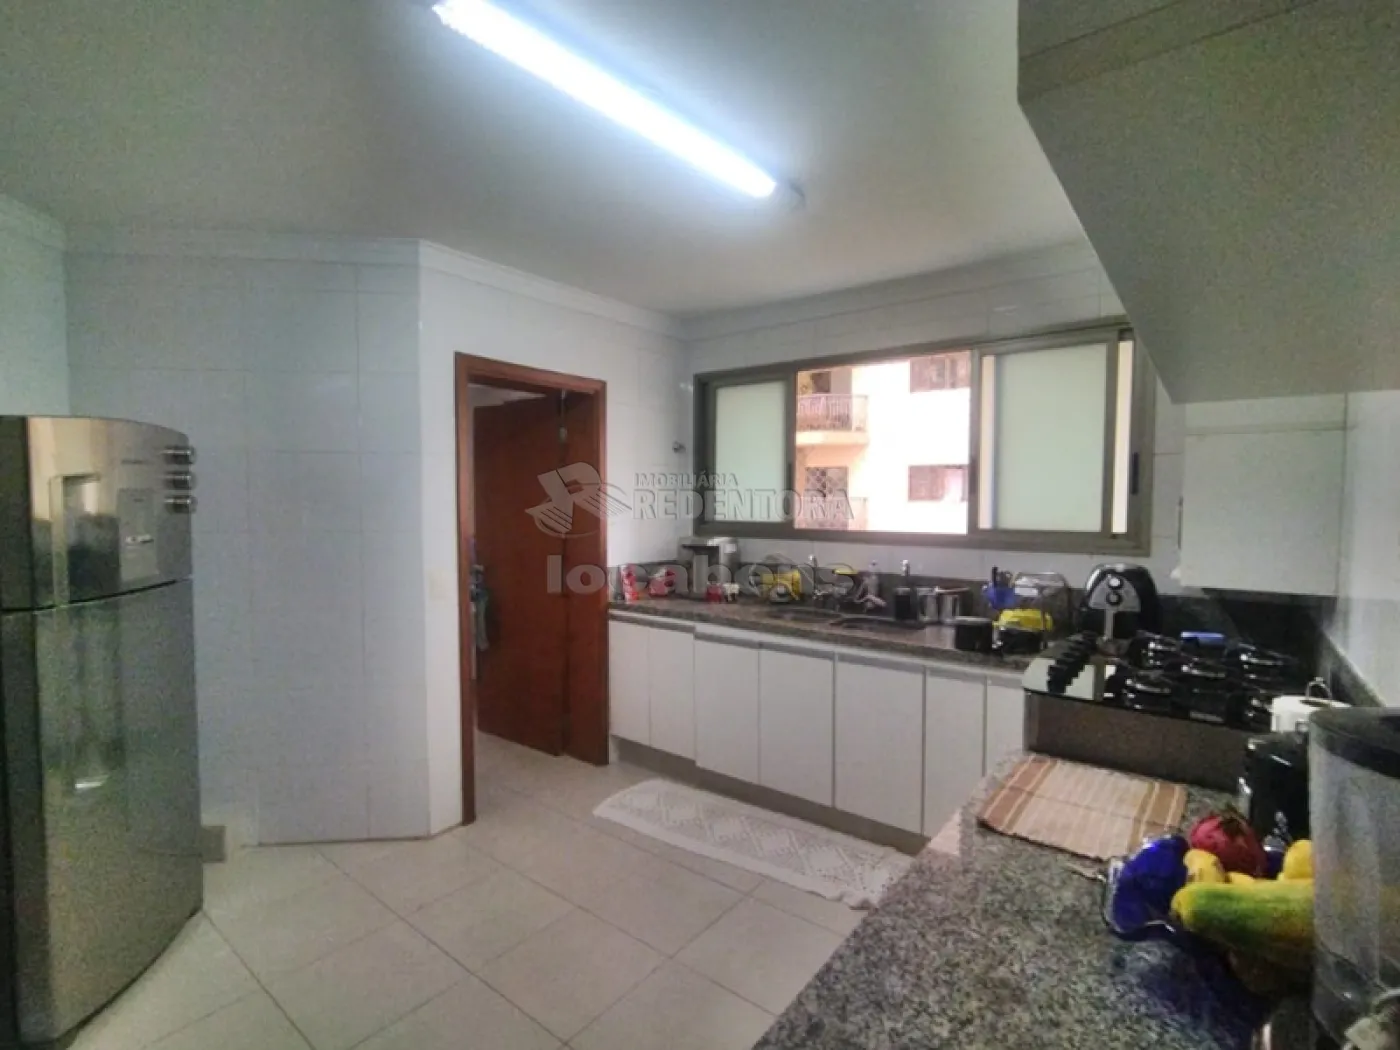 Comprar Apartamento / Padrão em São José do Rio Preto R$ 600.000,00 - Foto 7